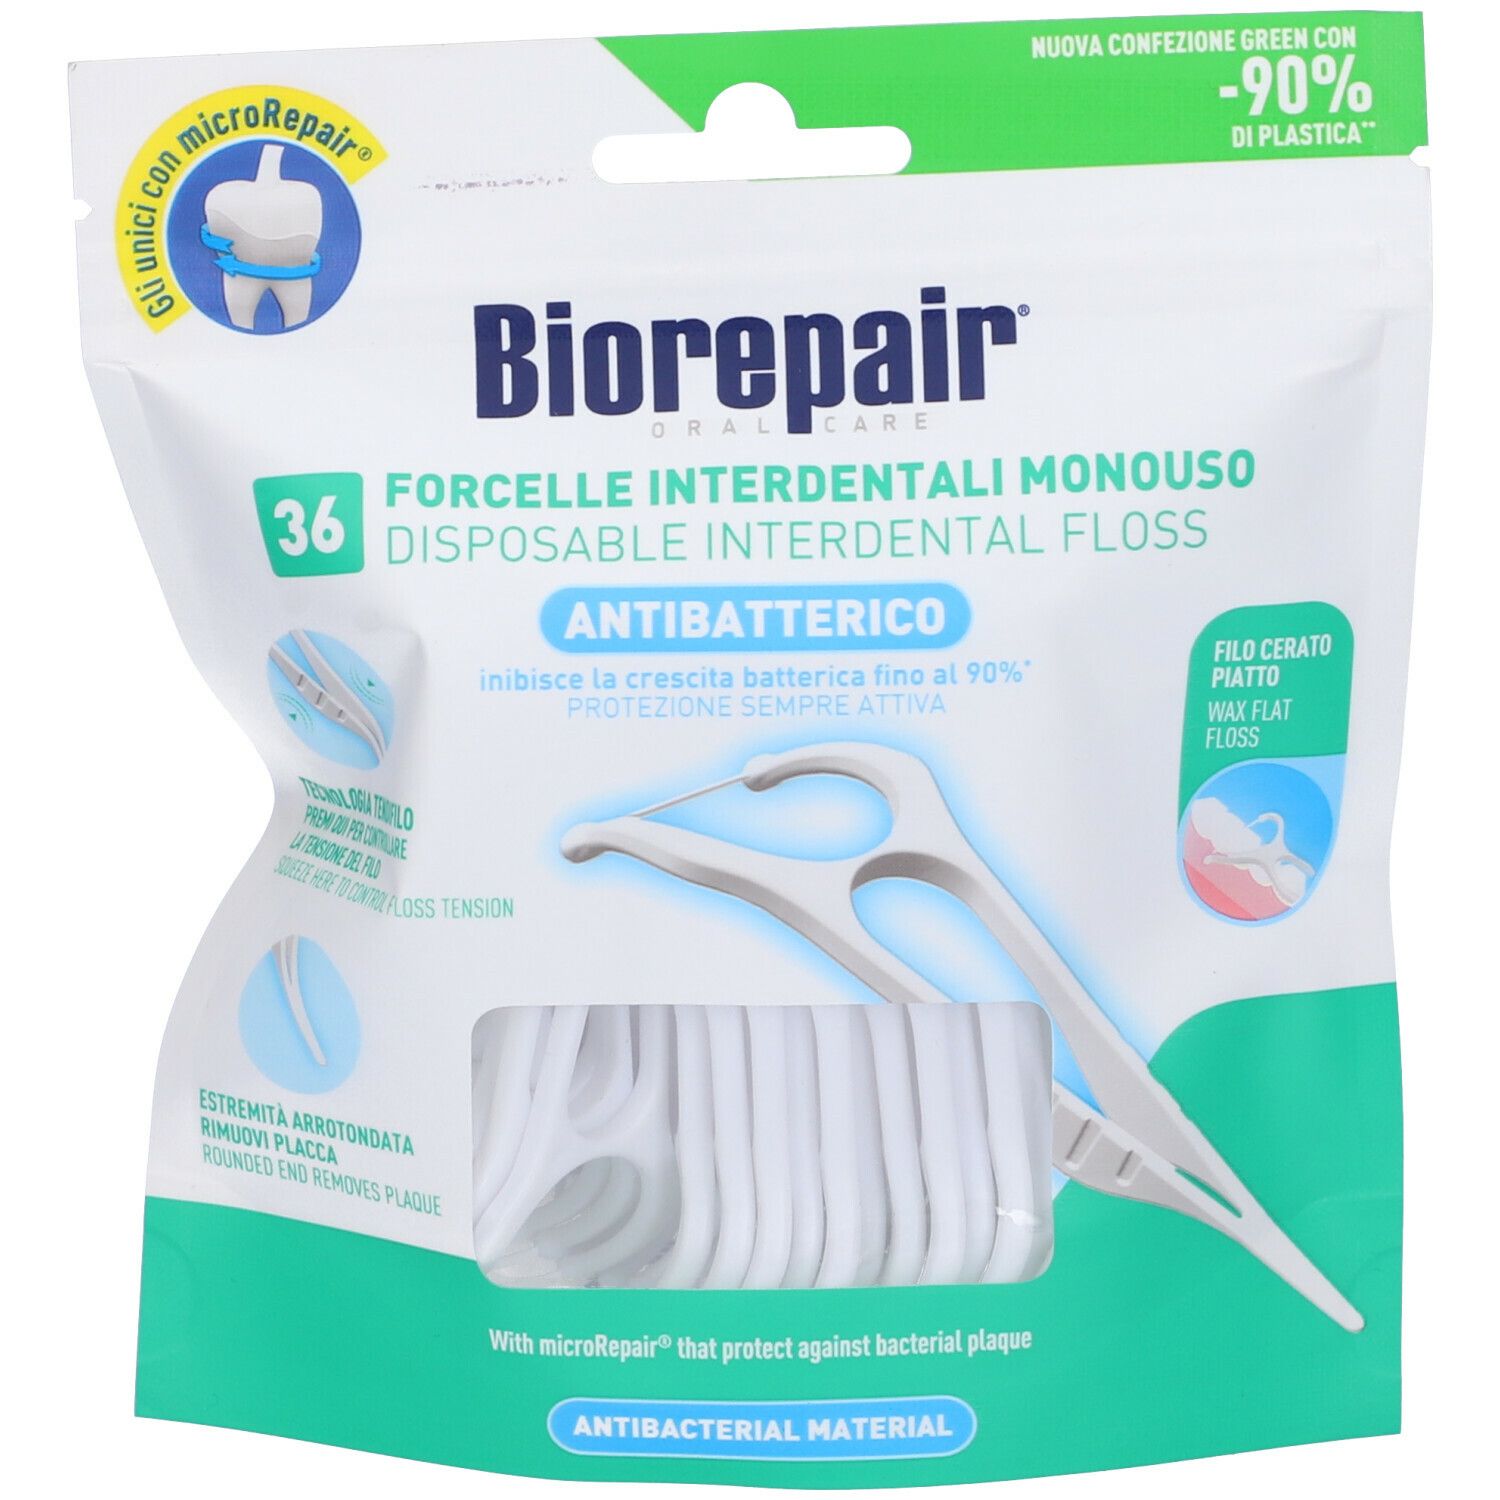 Biorepair® Forcelle Antibatteriche Interdentali